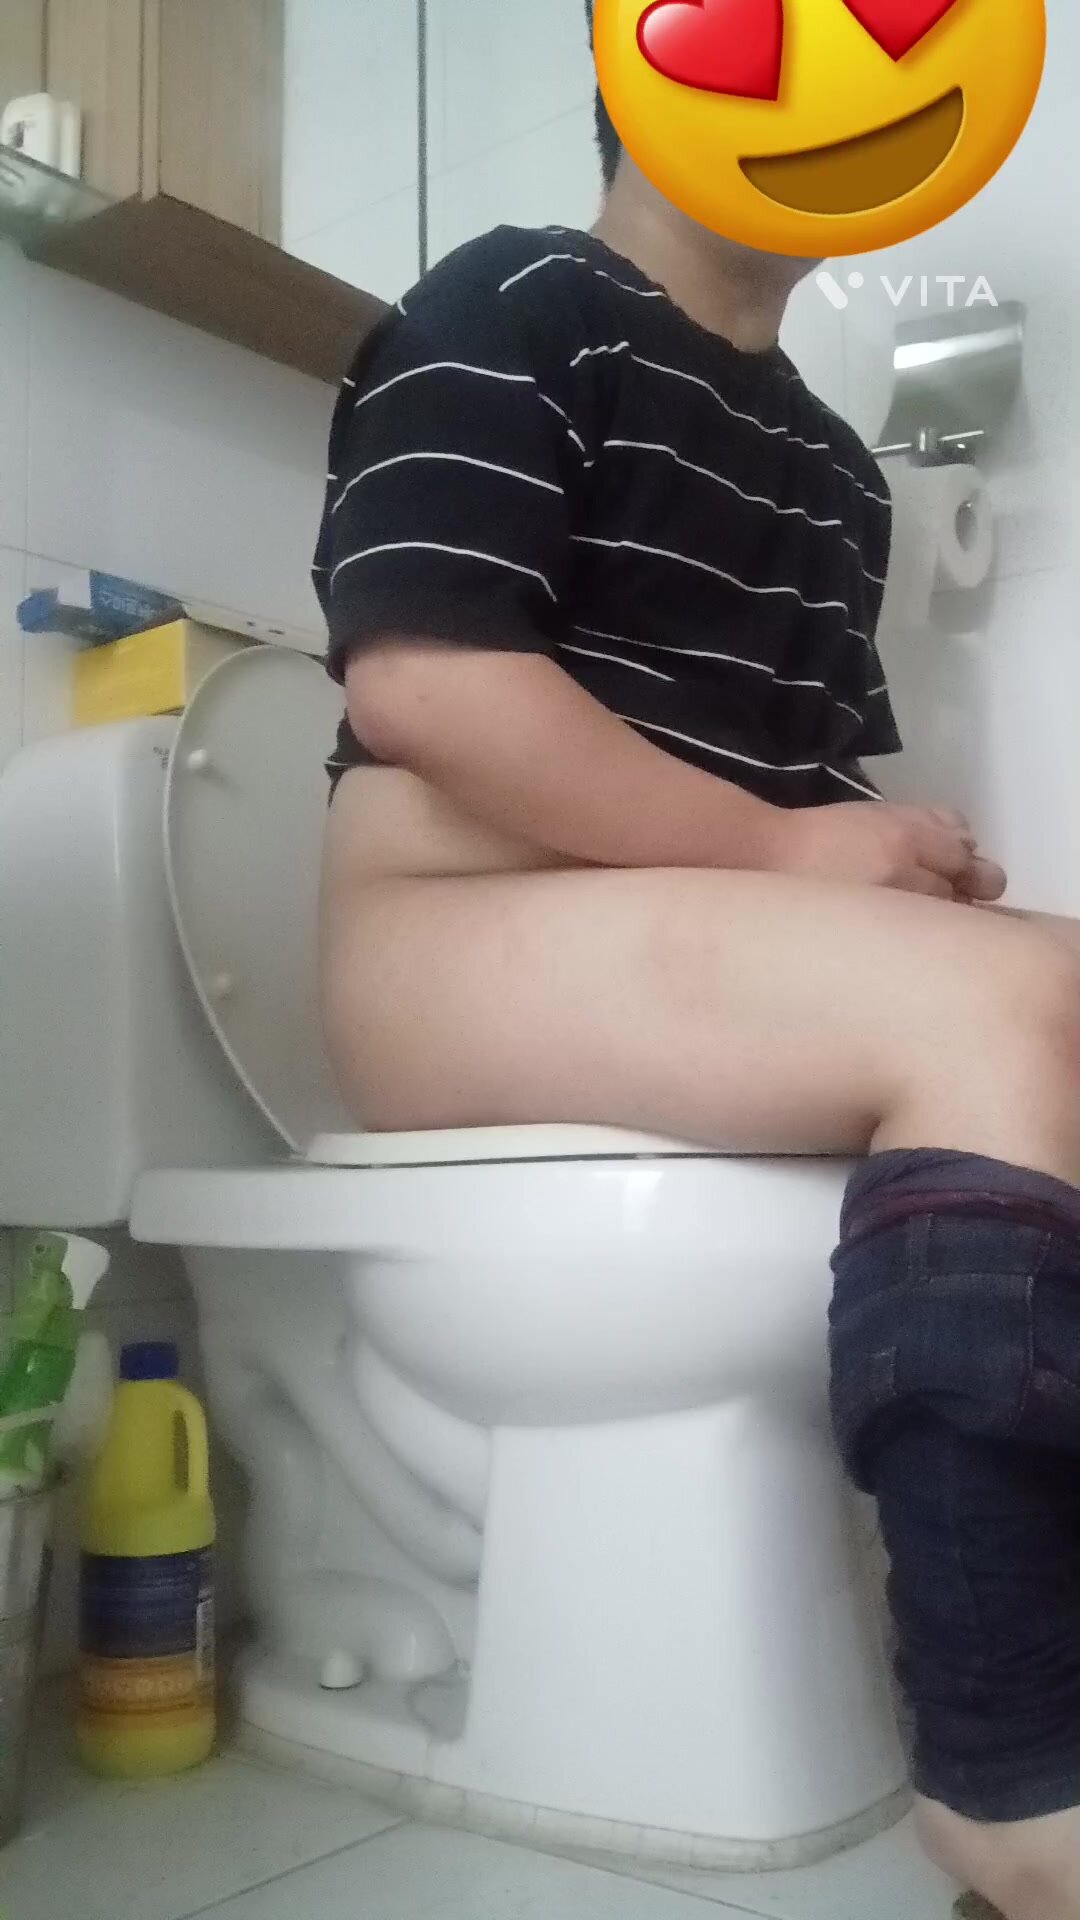 My morning poop - video 6